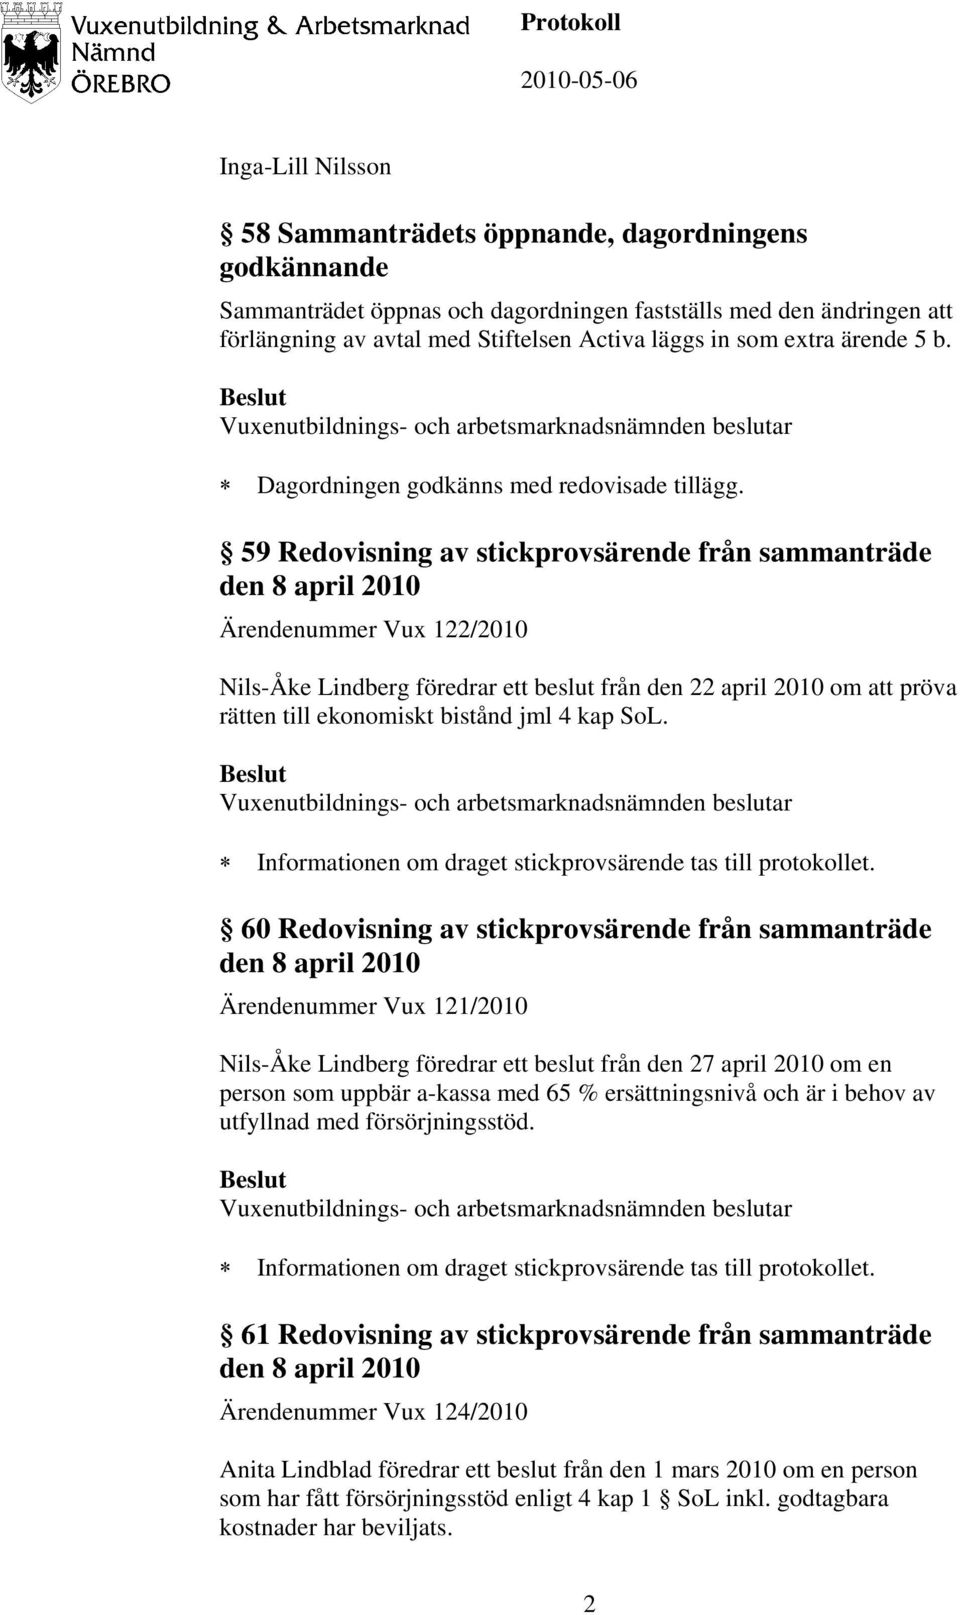 59 Redovisning av stickprovsärende från sammanträde den 8 april 2010 Ärendenummer Vux 122/2010 Nils-Åke Lindberg föredrar ett beslut från den 22 april 2010 om att pröva rätten till ekonomiskt bistånd